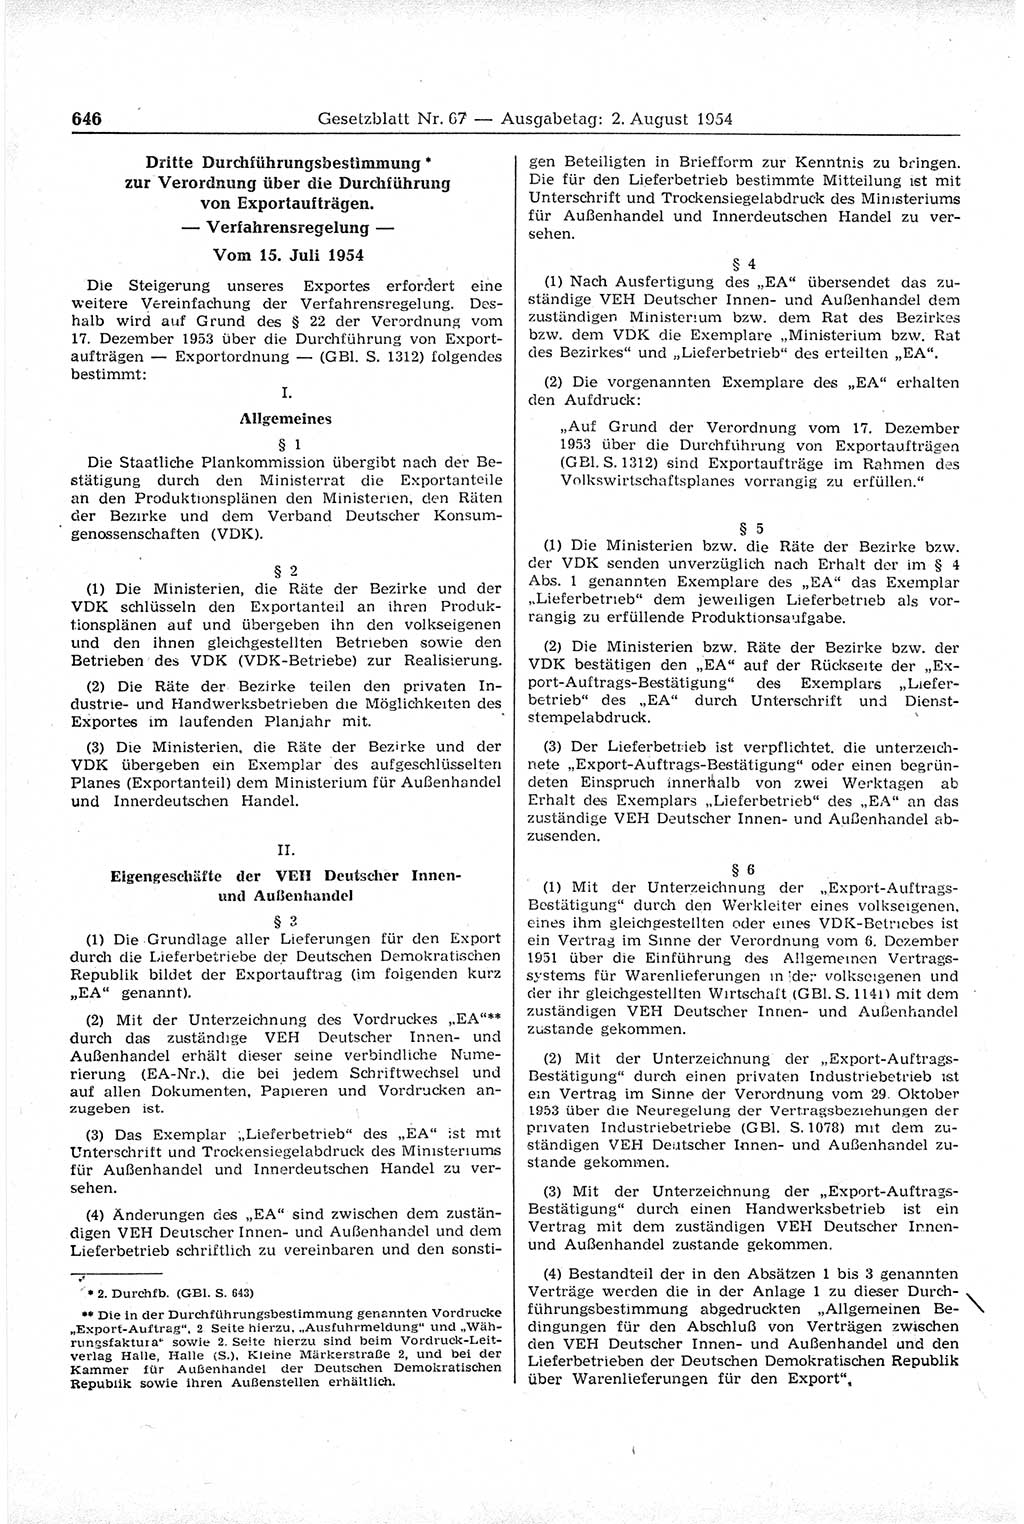 Gesetzblatt (GBl.) der Deutschen Demokratischen Republik (DDR) 1954, Seite 646 (GBl. DDR 1954, S. 646)